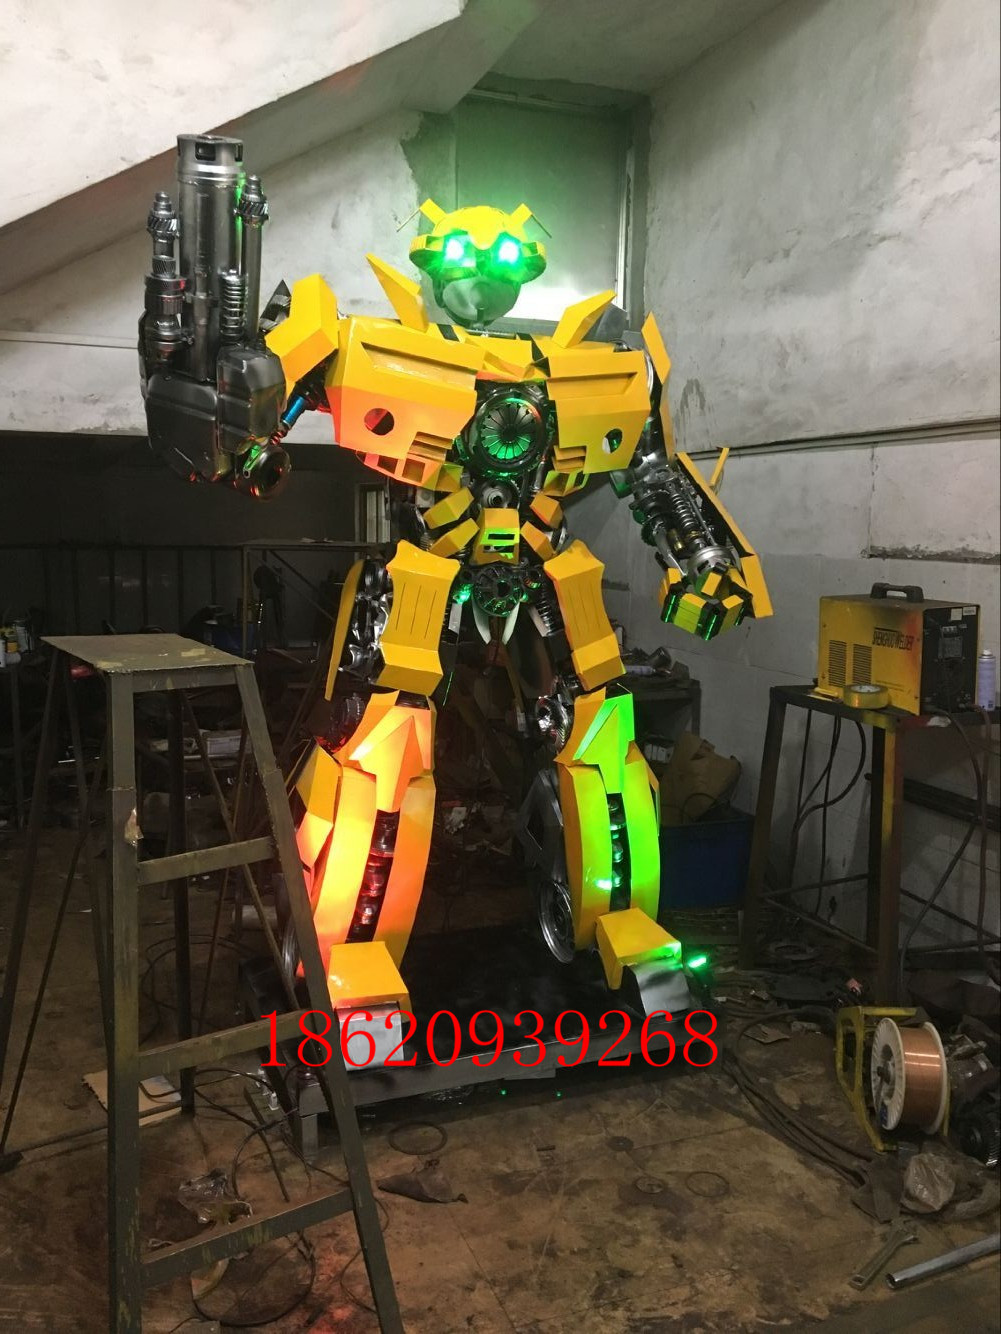 钢铁机器人钢铁机器人 大型钢铁变形金刚模型 全金属机器人制作